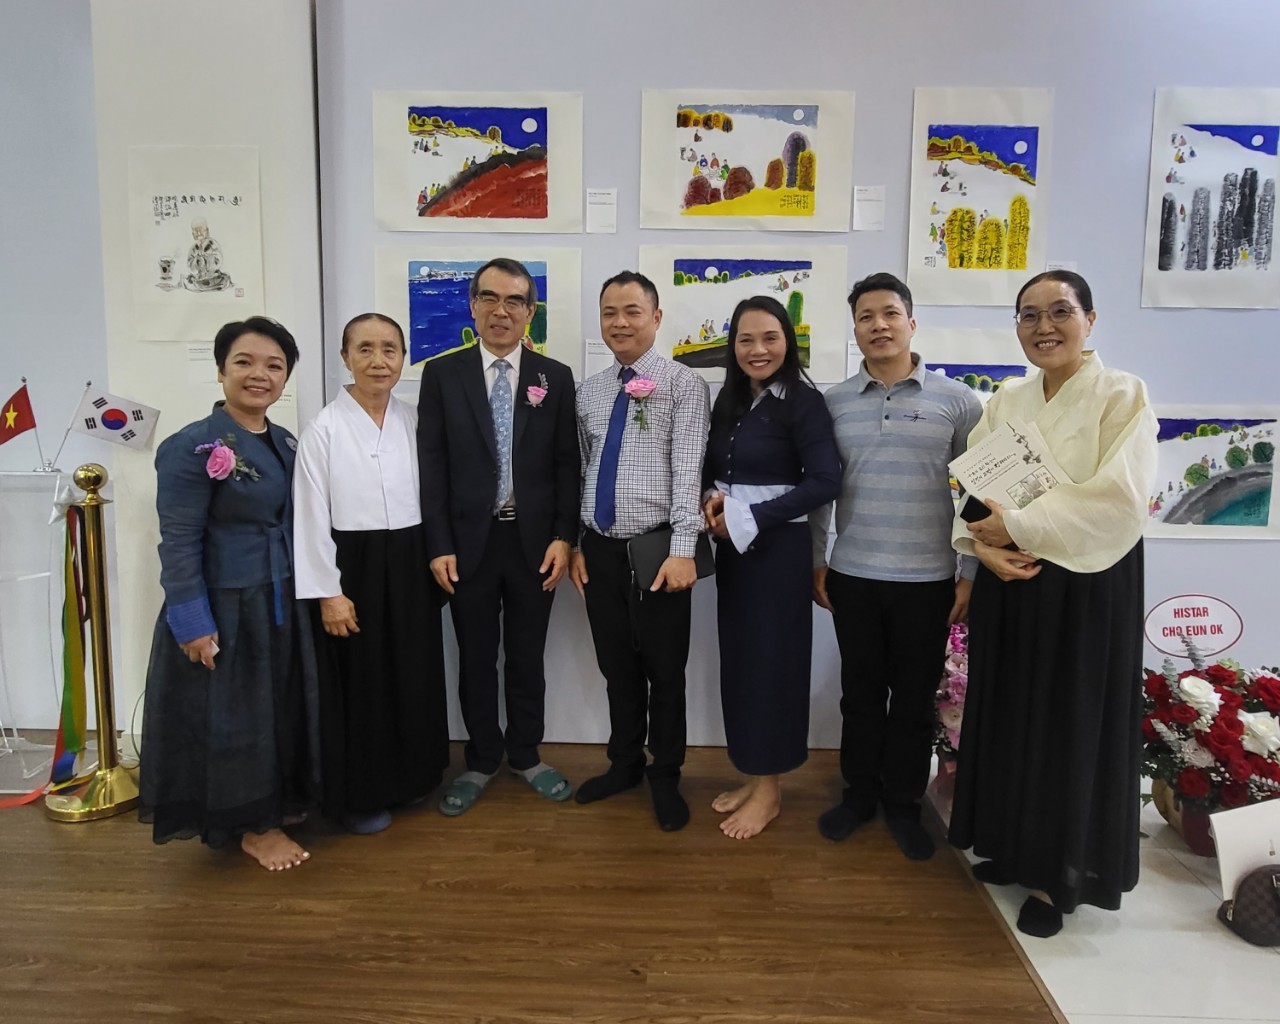 Khai mạc triển lãm tranh Việt - Hàn: "Phật pháp được lưu truyền tại thành phố Hà Nội nghìn năm"